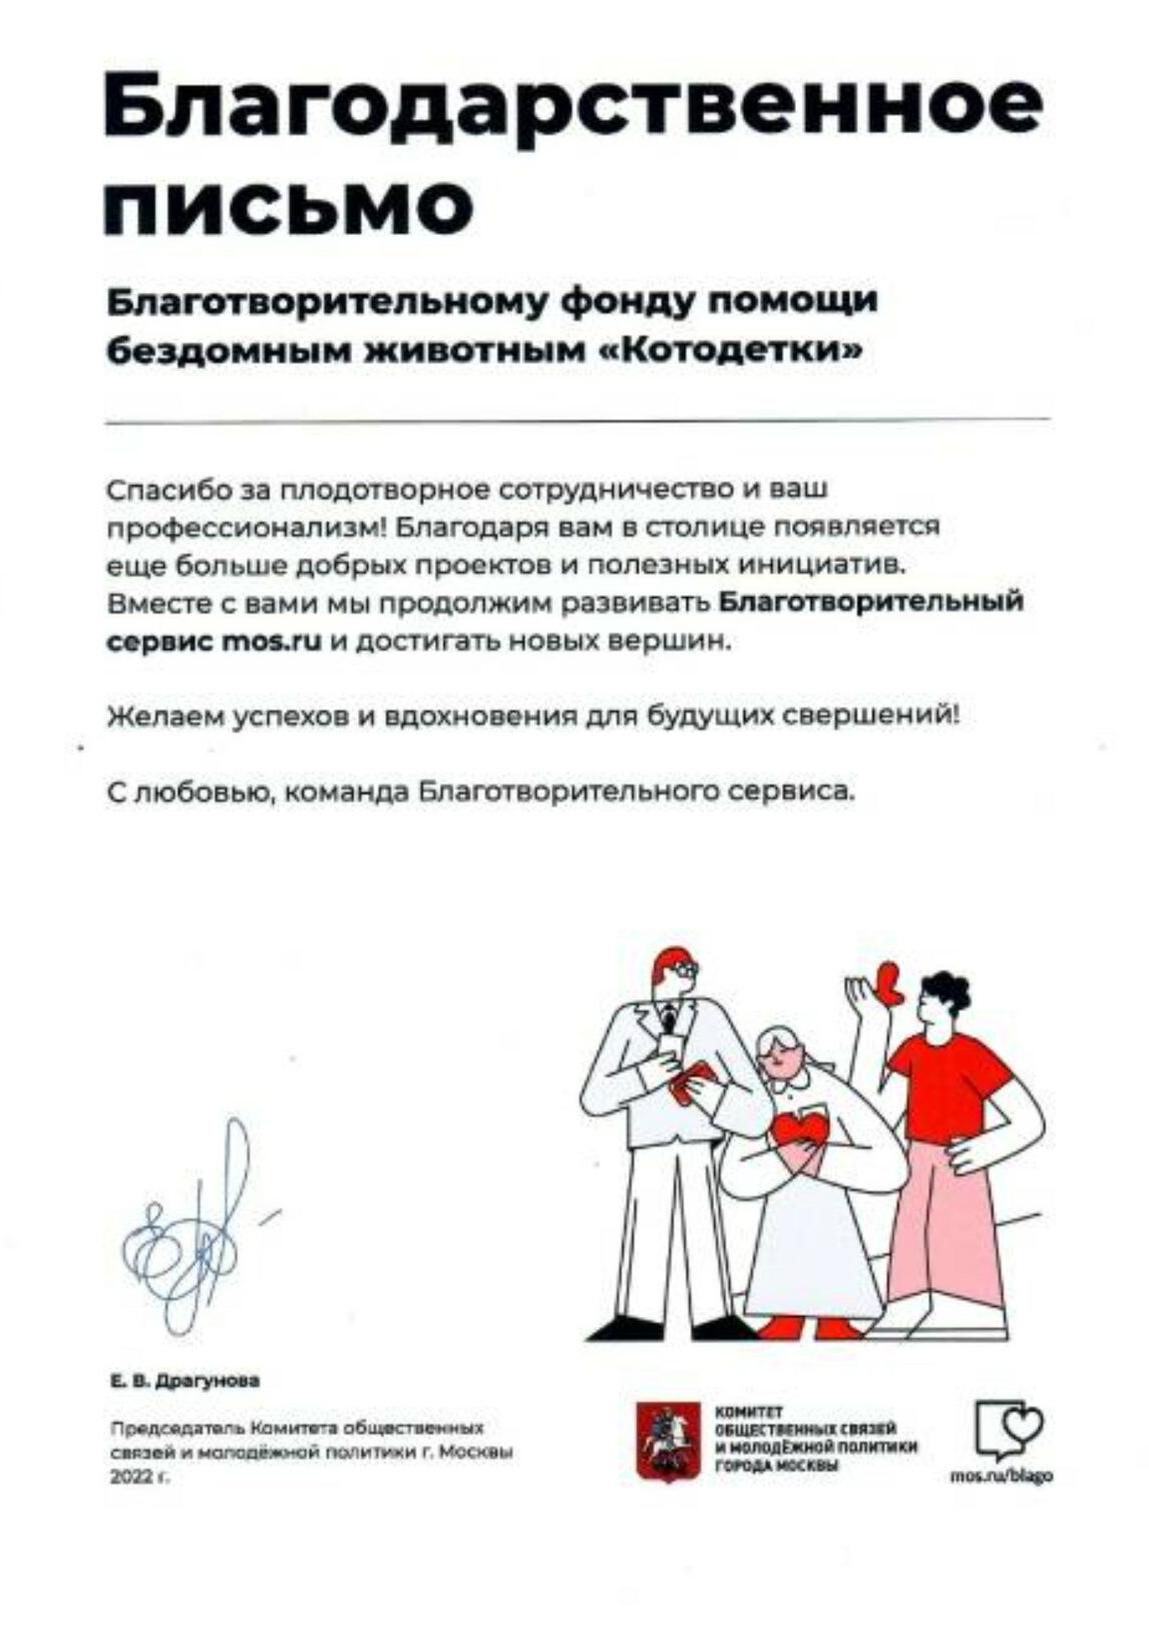 Благодарственное письмо от портала mos.ru